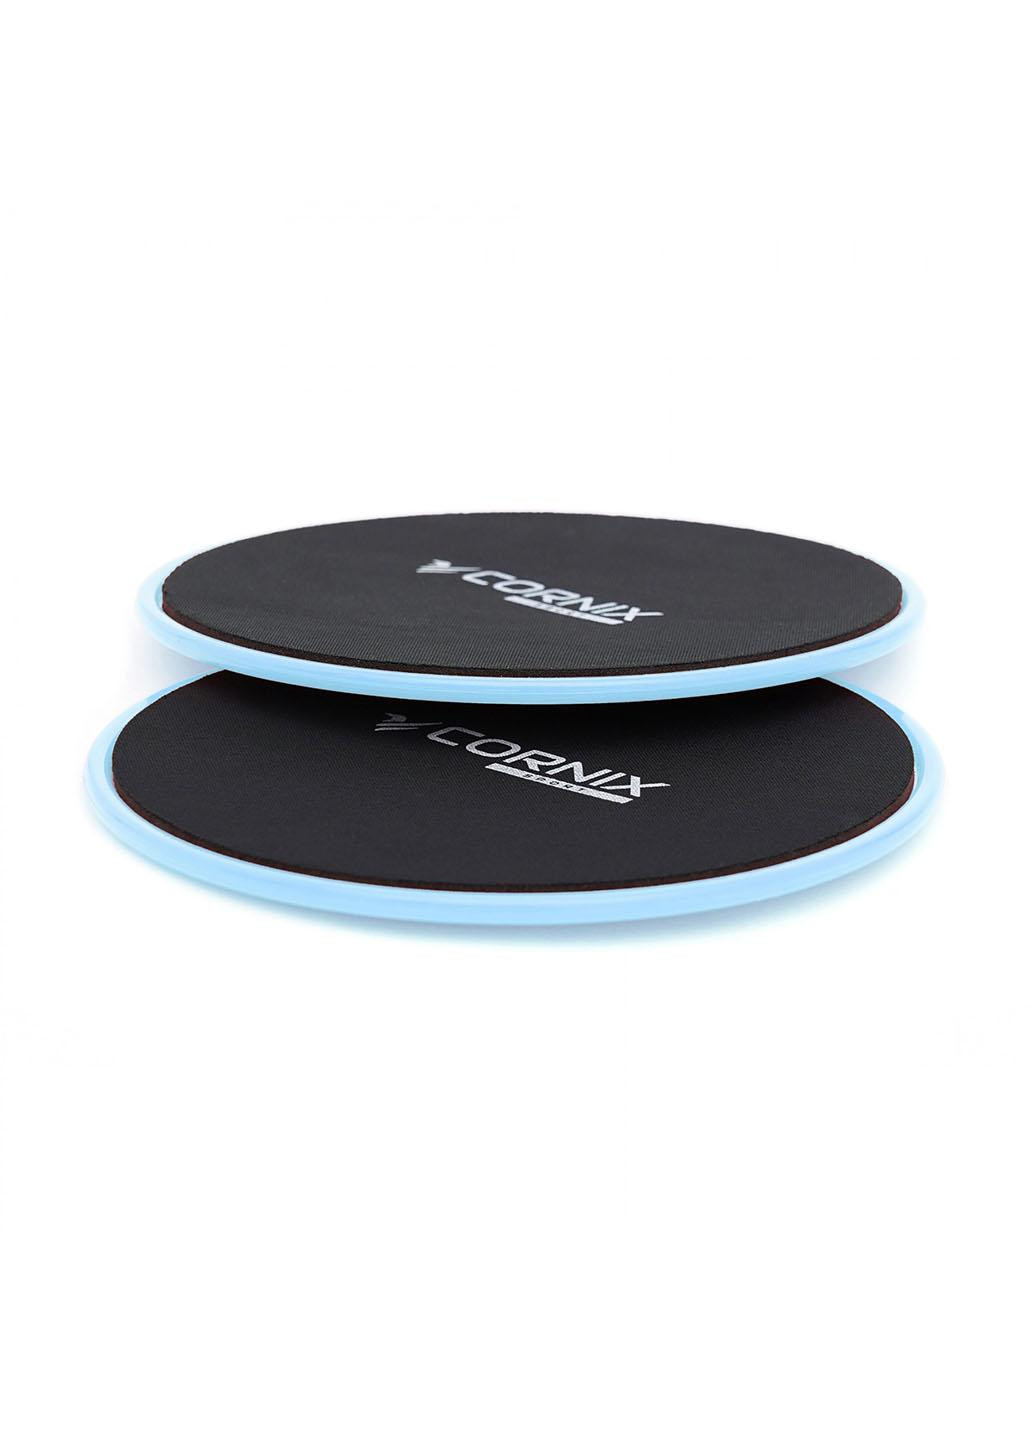 Диски-слайдеры для скольжения (глайдинга) Cornix Sliding Disc 2 шт XR-0179 Sky Blue No Brand (260735598)